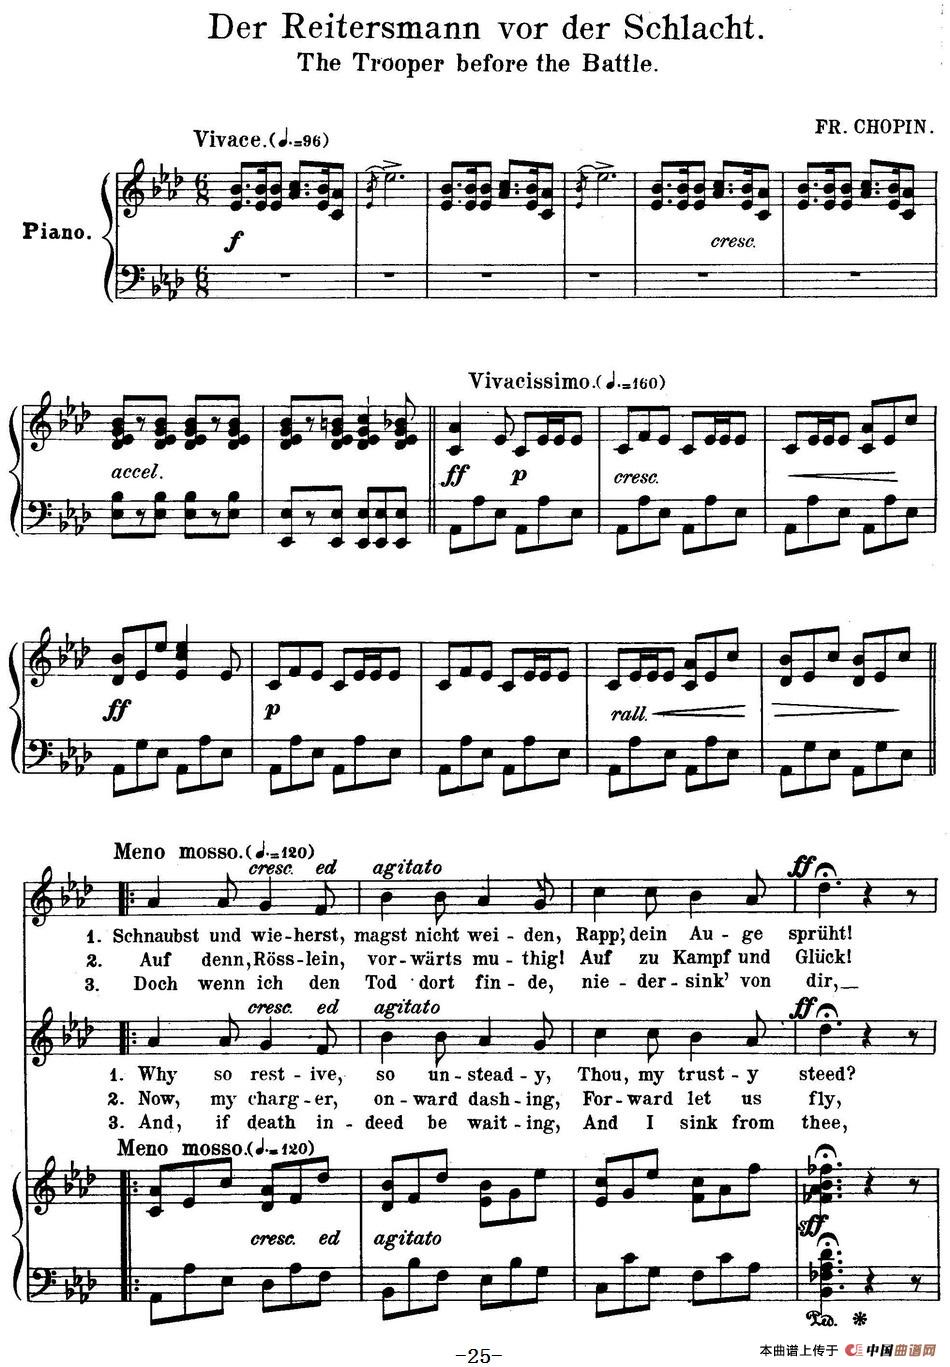 Chopin-17 Polish Songs Op.74，No.10（Der Reitersmann vor de